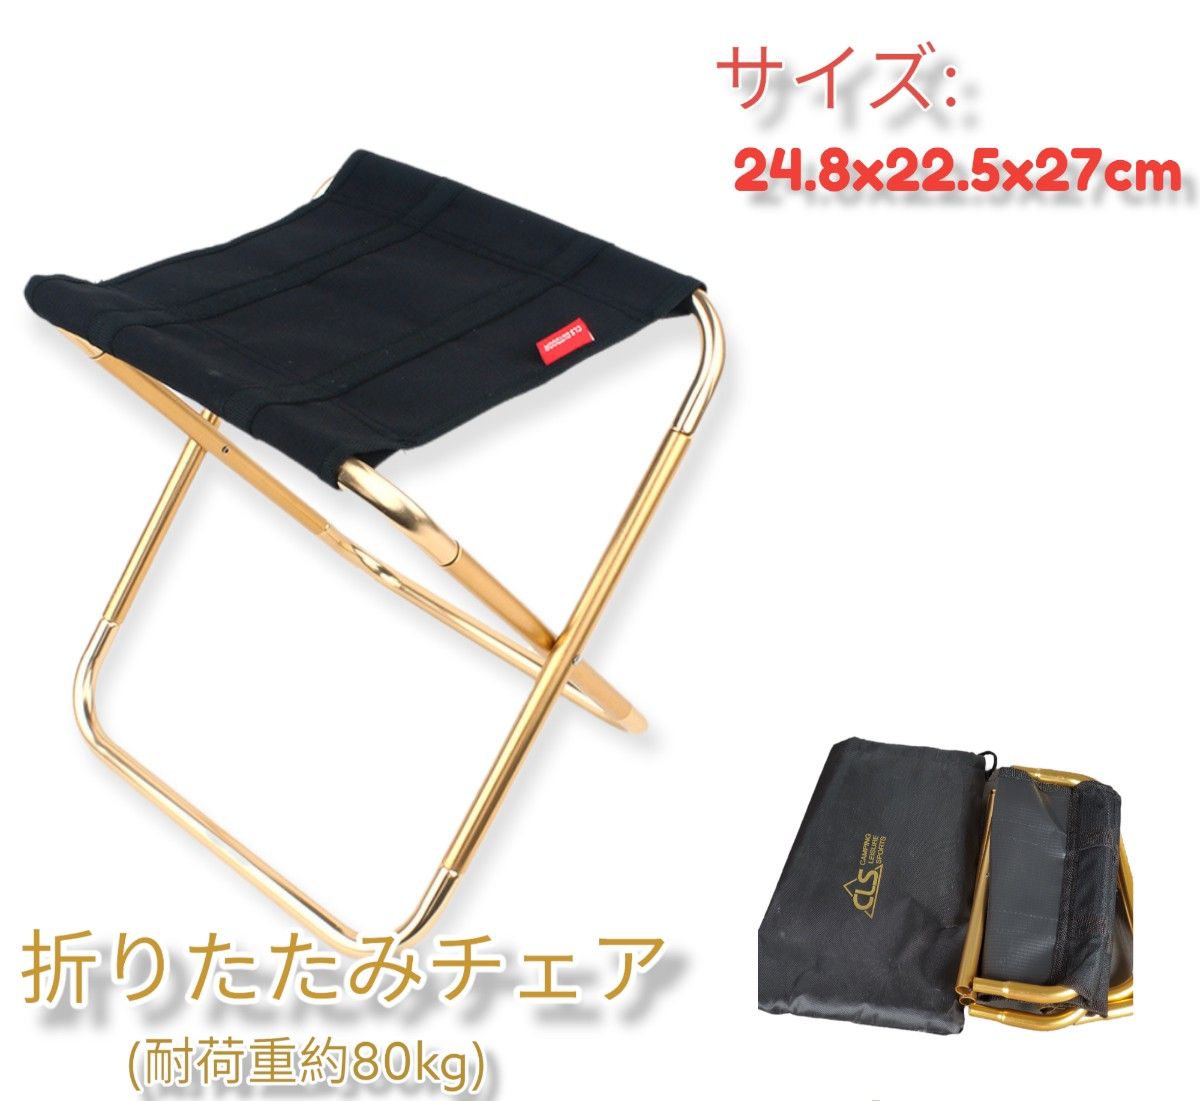 春セール!!アウトドア 折り畳み椅子 ゴールド 超軽量 収納袋付 持ち運び便利  コンパクト